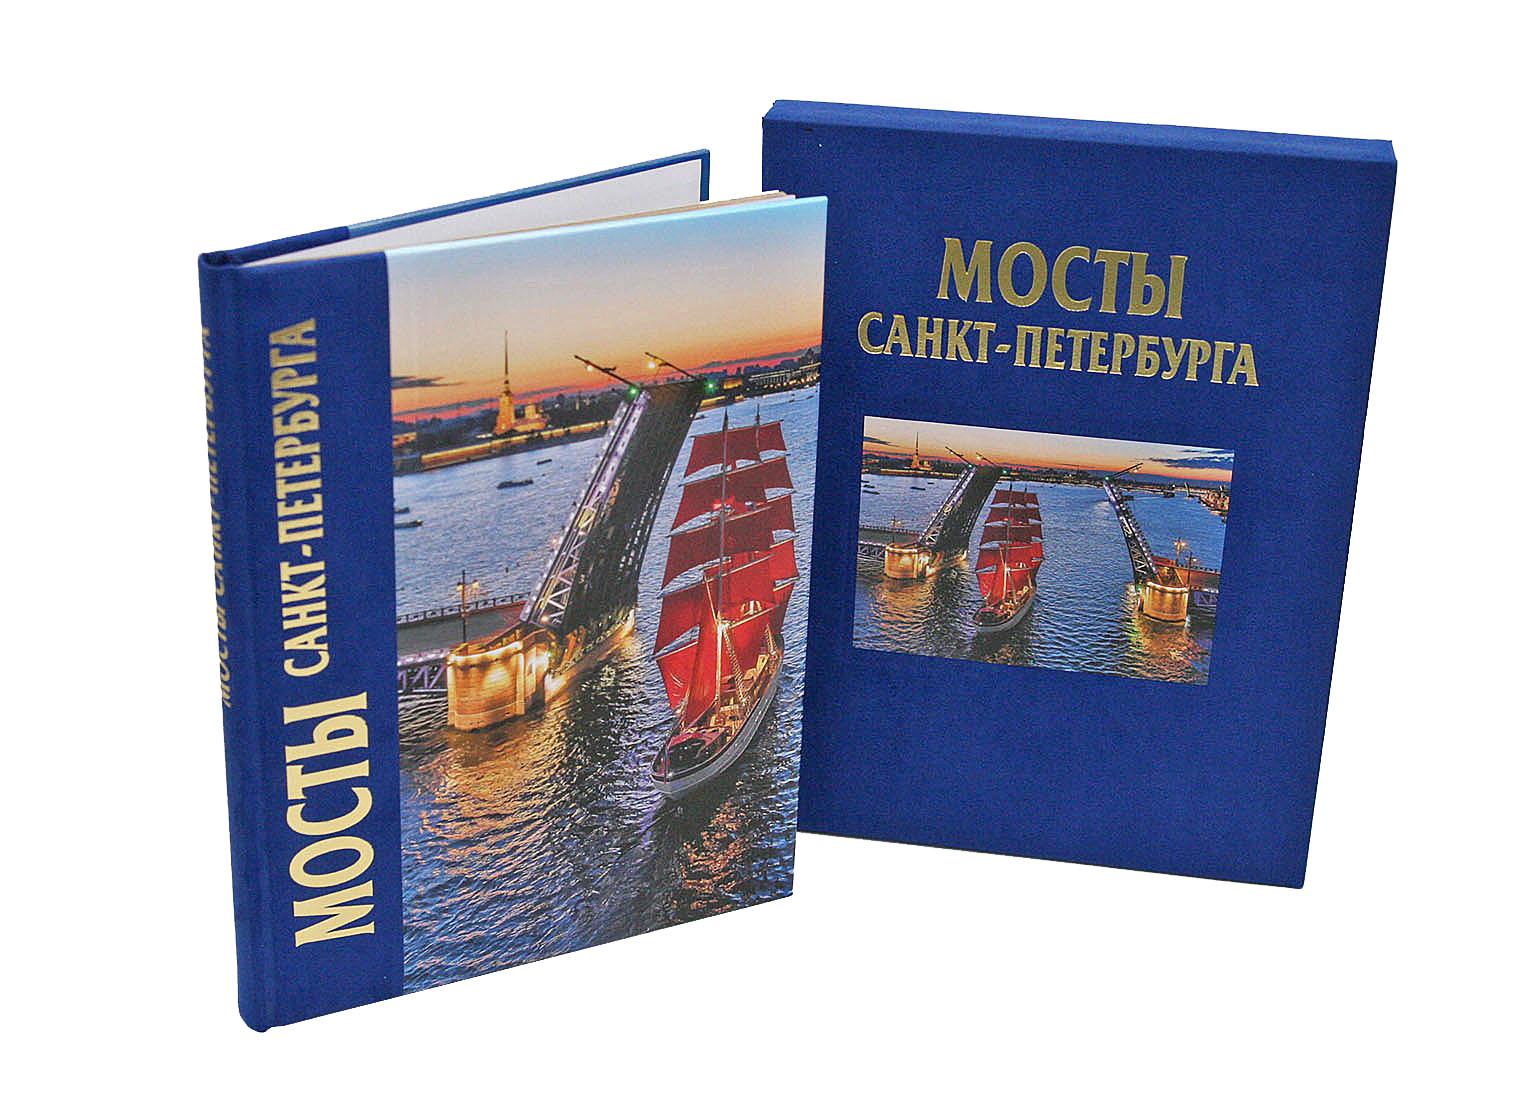 Мосты альбом 192 страницы с футляром комби, русский язык мосты петербурга